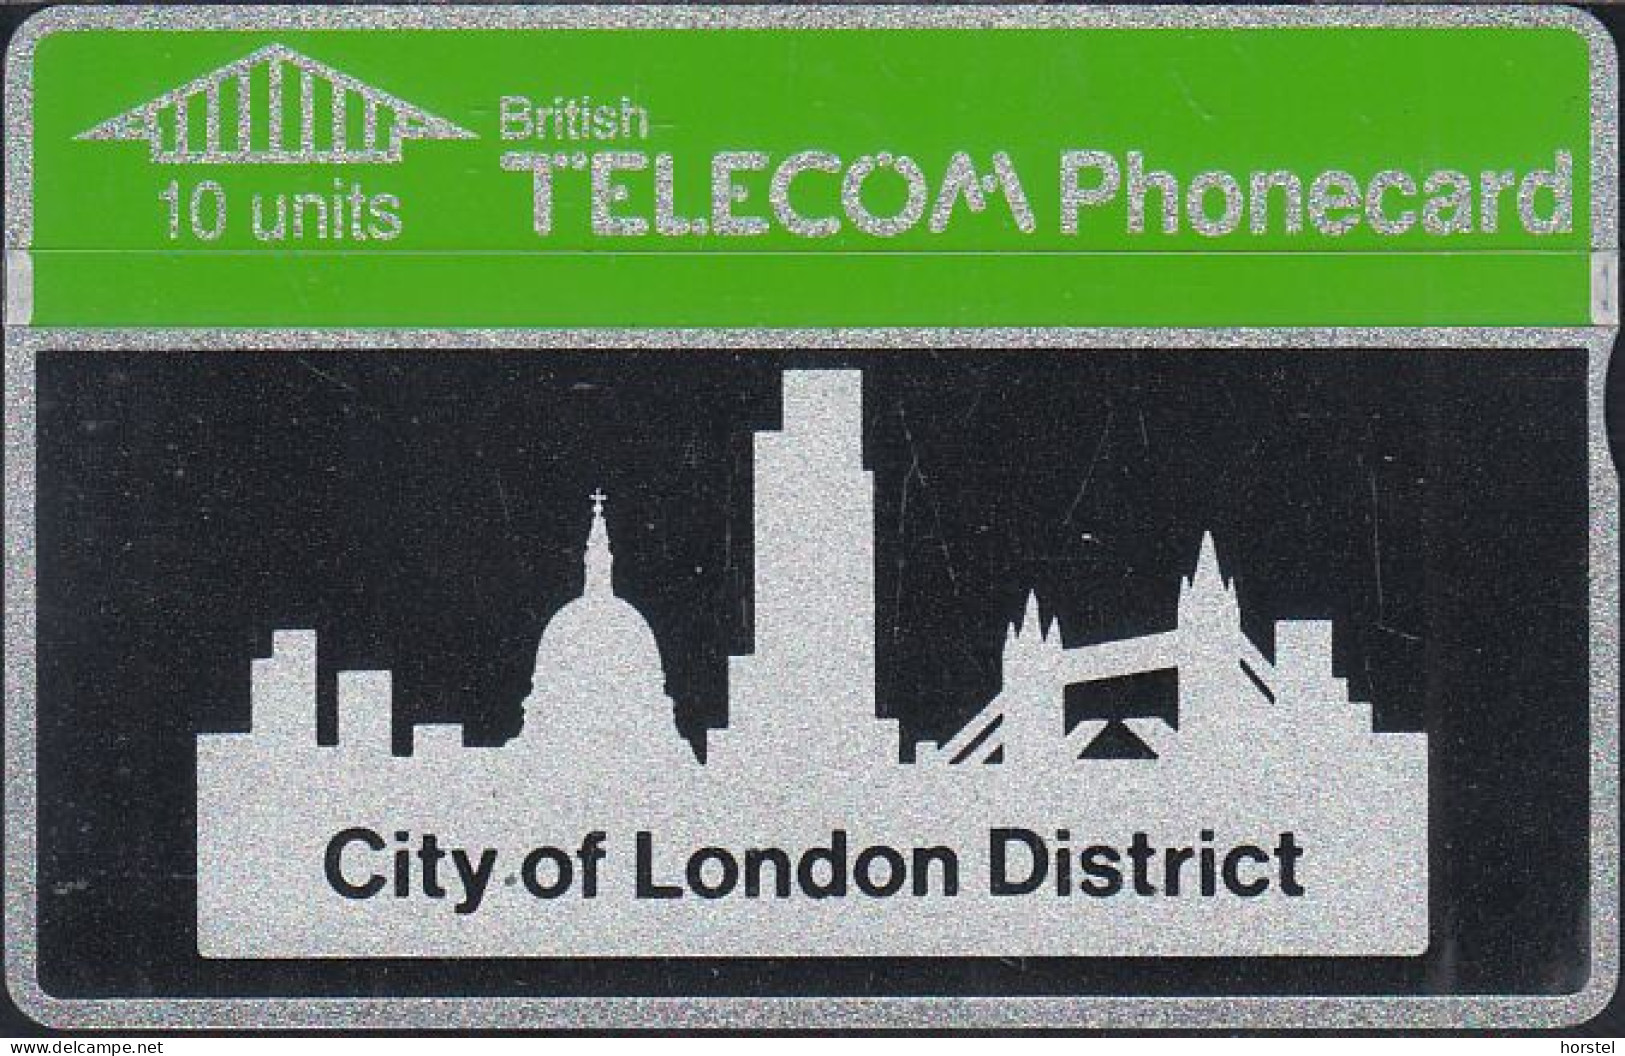 UK British Telecom Phonecard - L&G Bti 0004 - 10 Units - City Of London District - 123A - Mint - BT Emissioni Interne